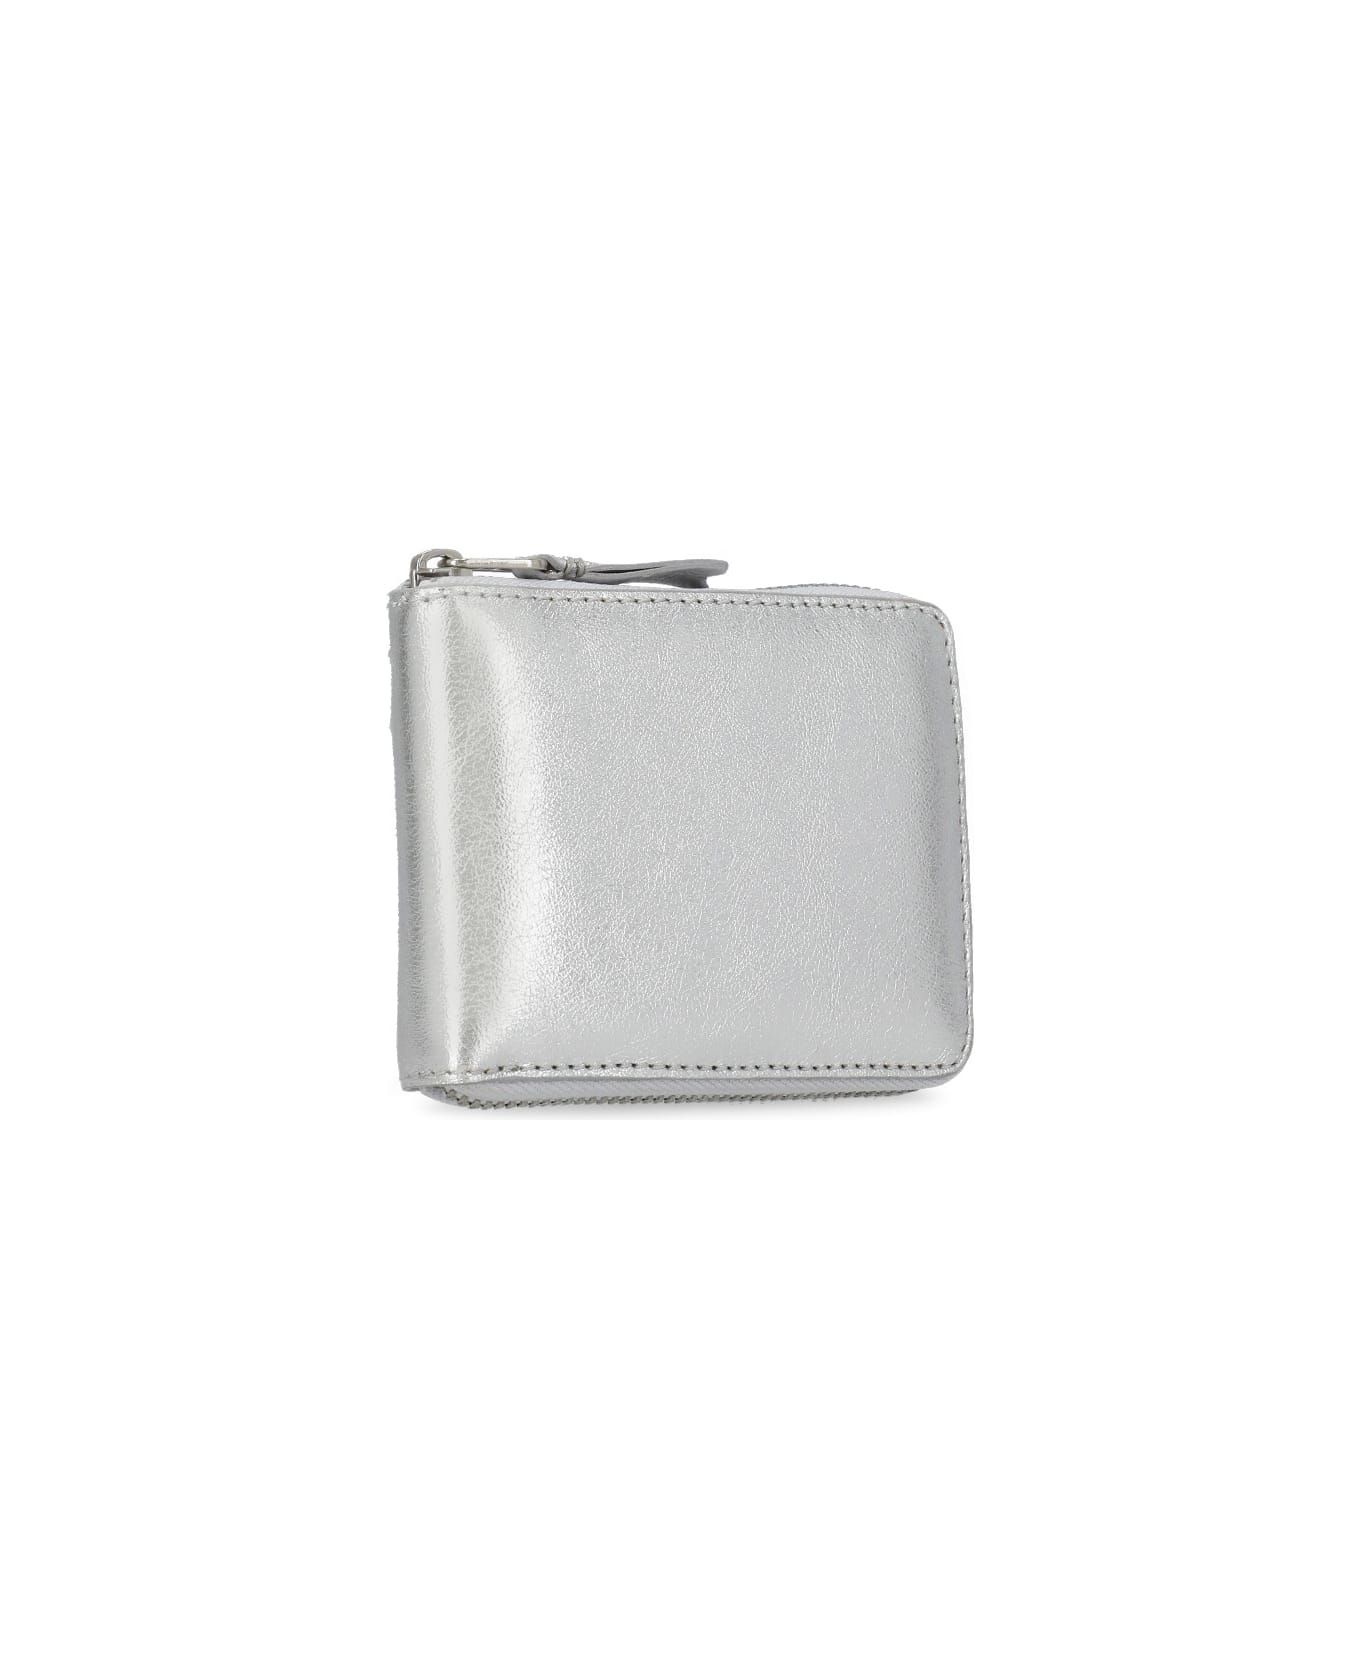 Comme des Garçons Wallet Leather Wallet - Silver 財布